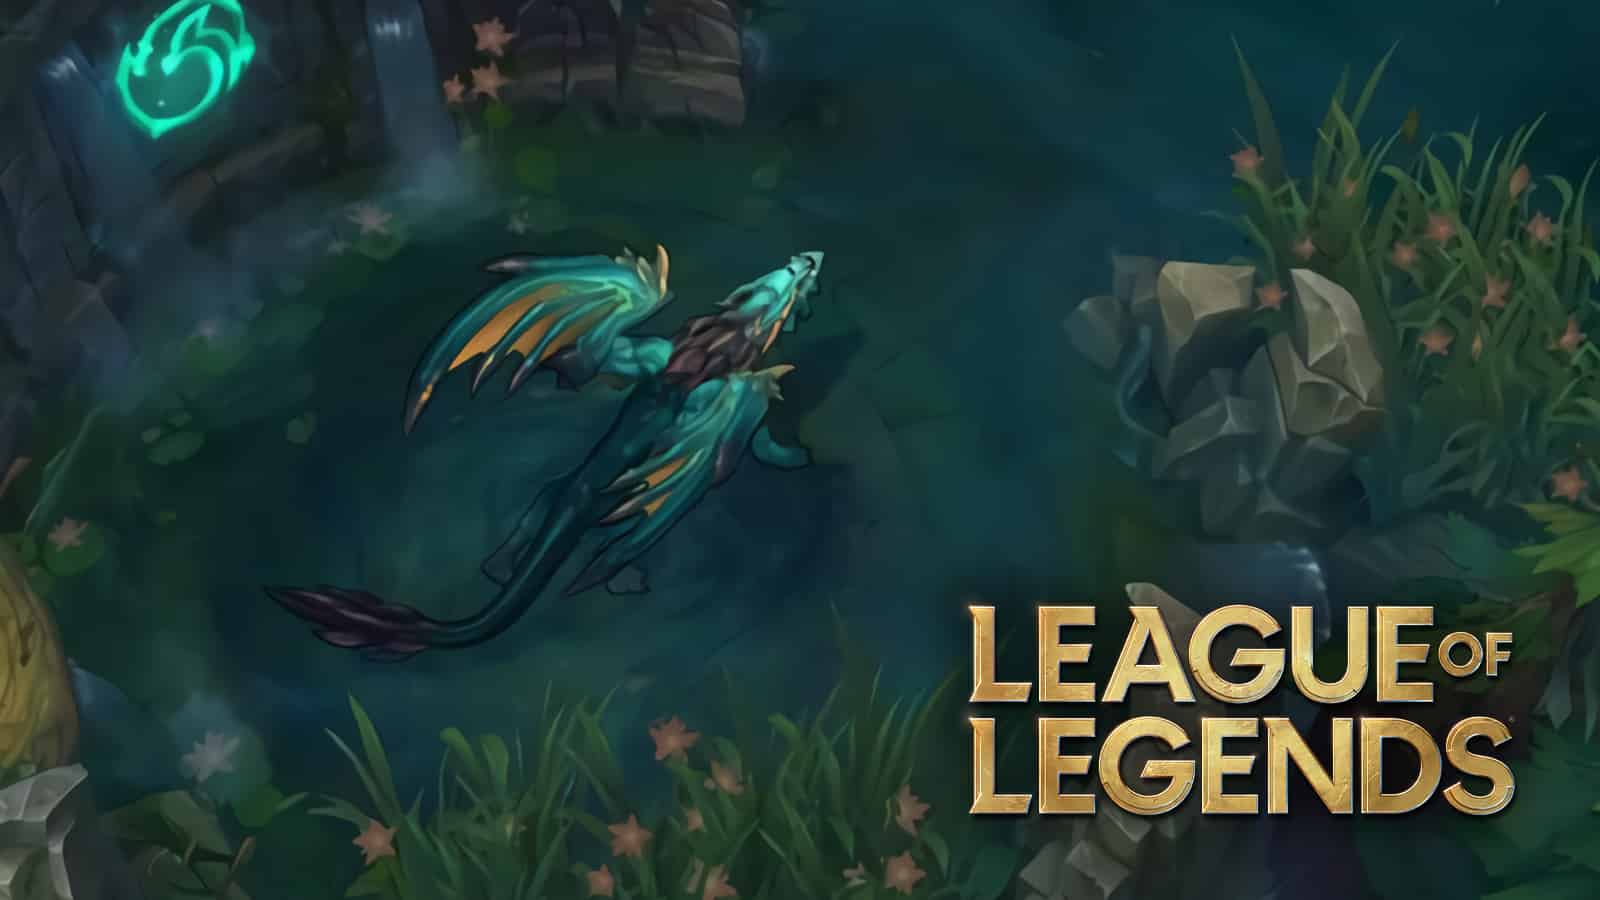 League of Legends dragon rework season 12 details